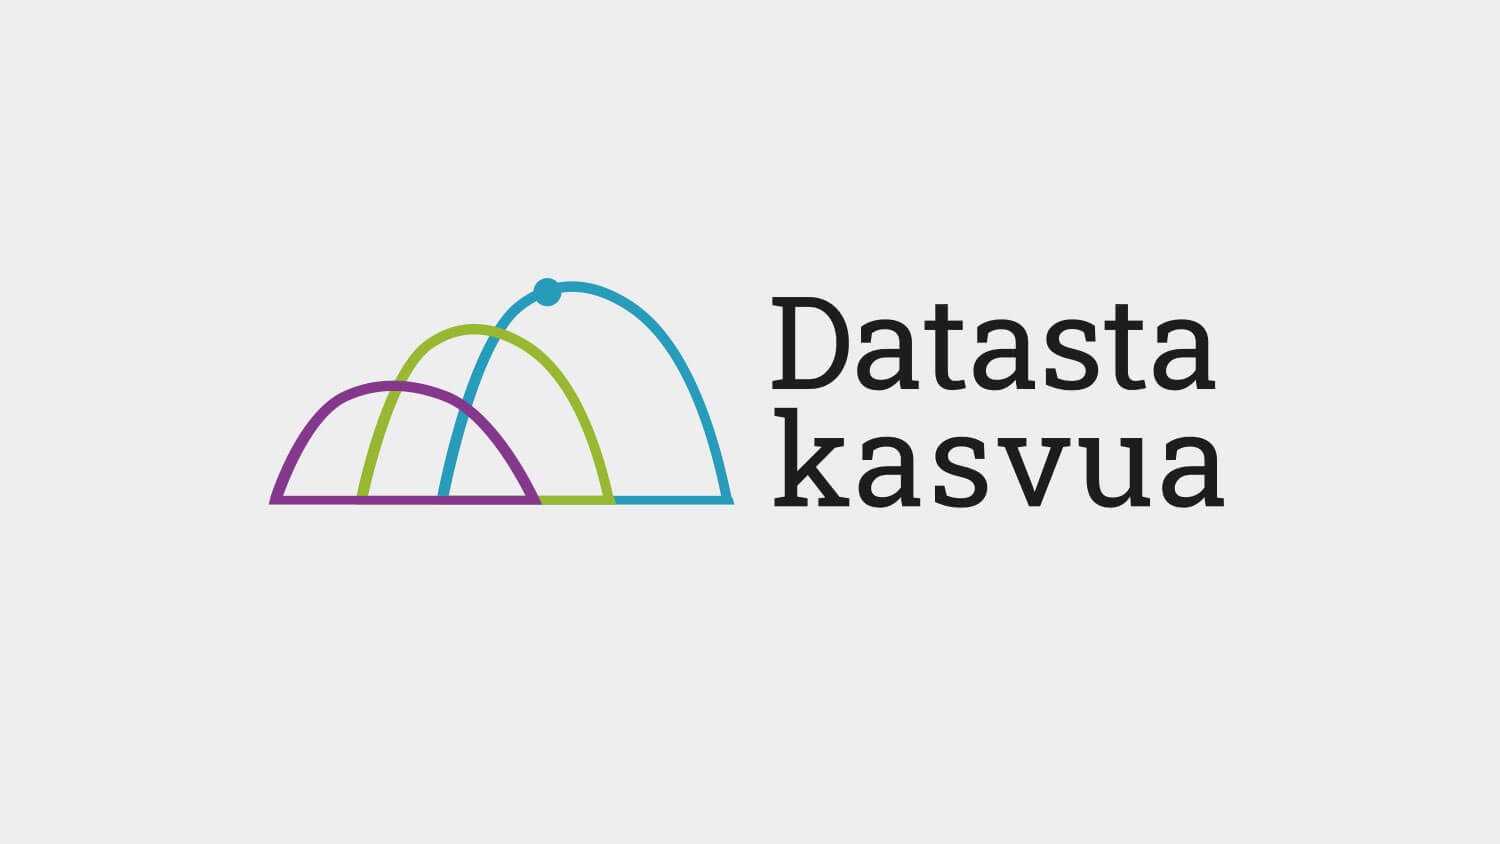 Datasta kasvua -hankkeen logo.